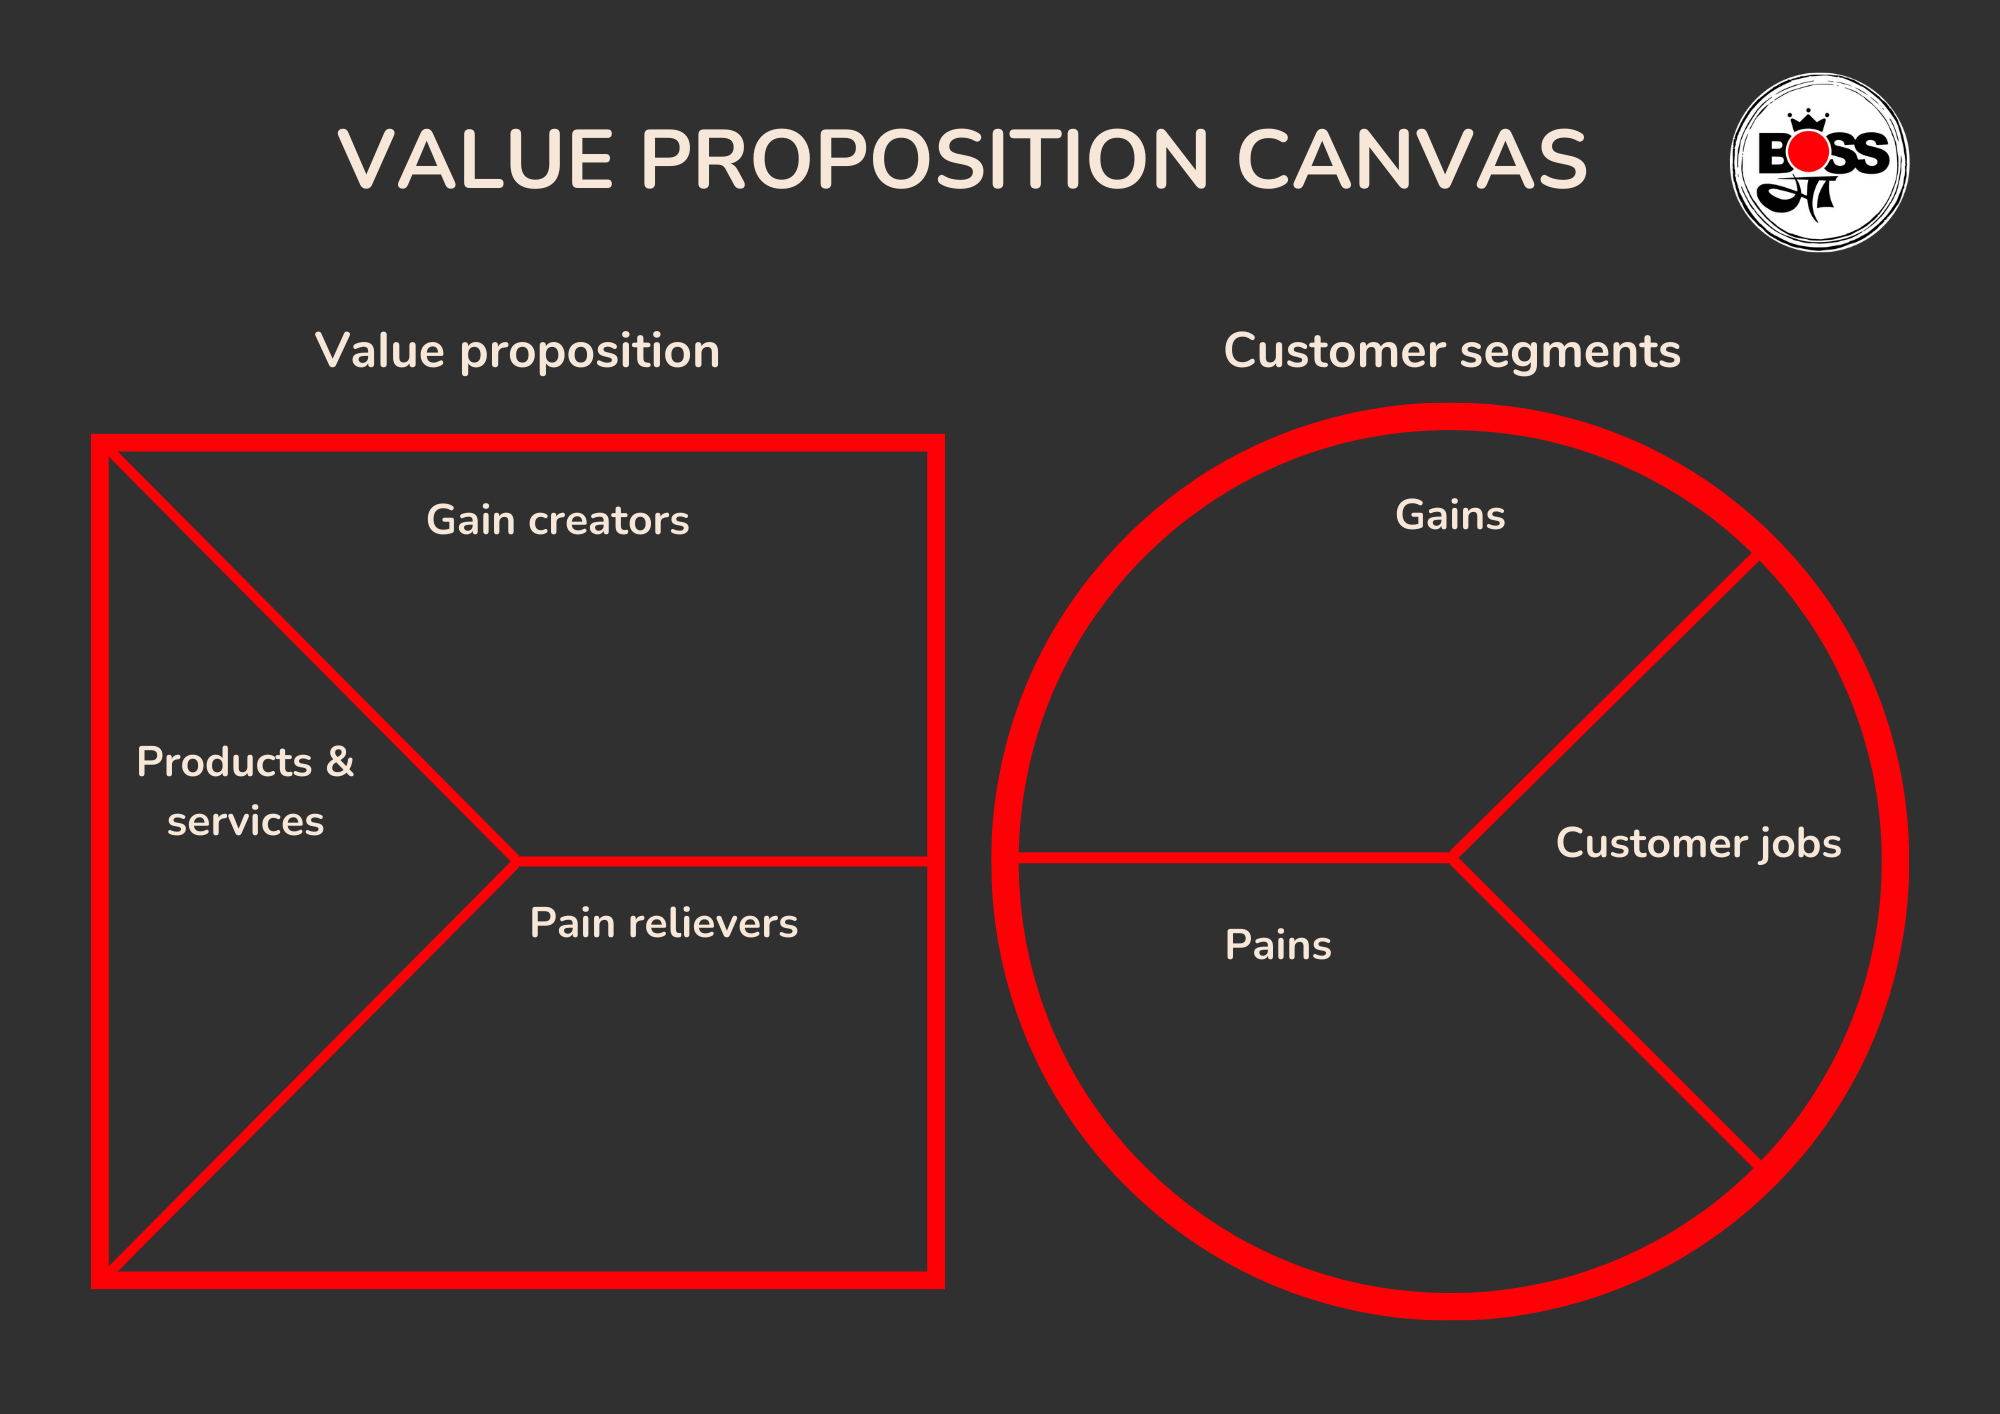 vp canvas, value proposition canvas